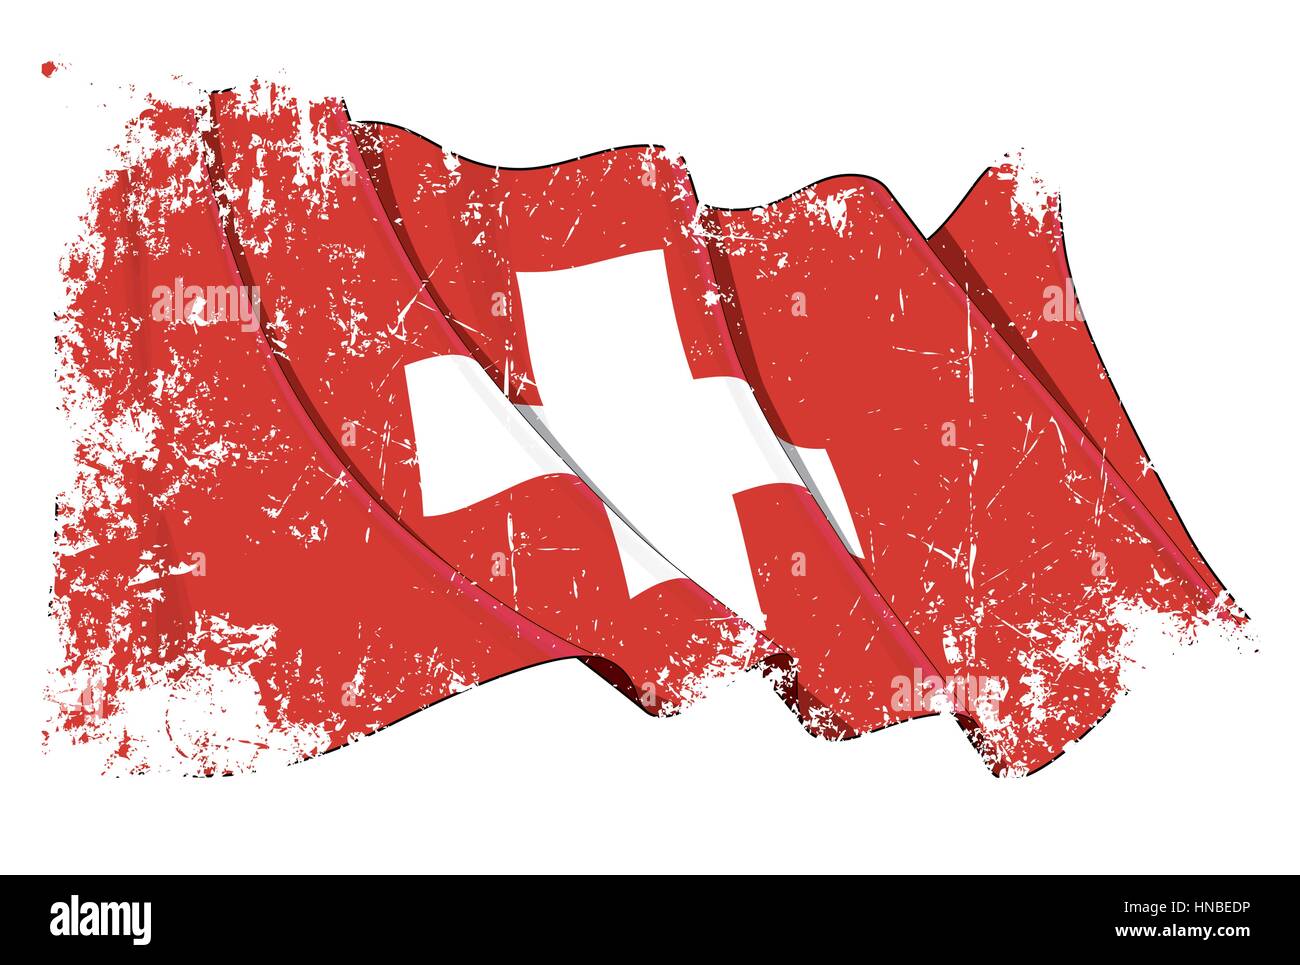 Grunge-Vektor-Illustration einer winkenden Schweizer Flagge. Alle Elemente übersichtlich organisiert. Textur, Linien, Schattierungen & Flagge Farben auf separate Ebenen für einfach ed Stock Vektor